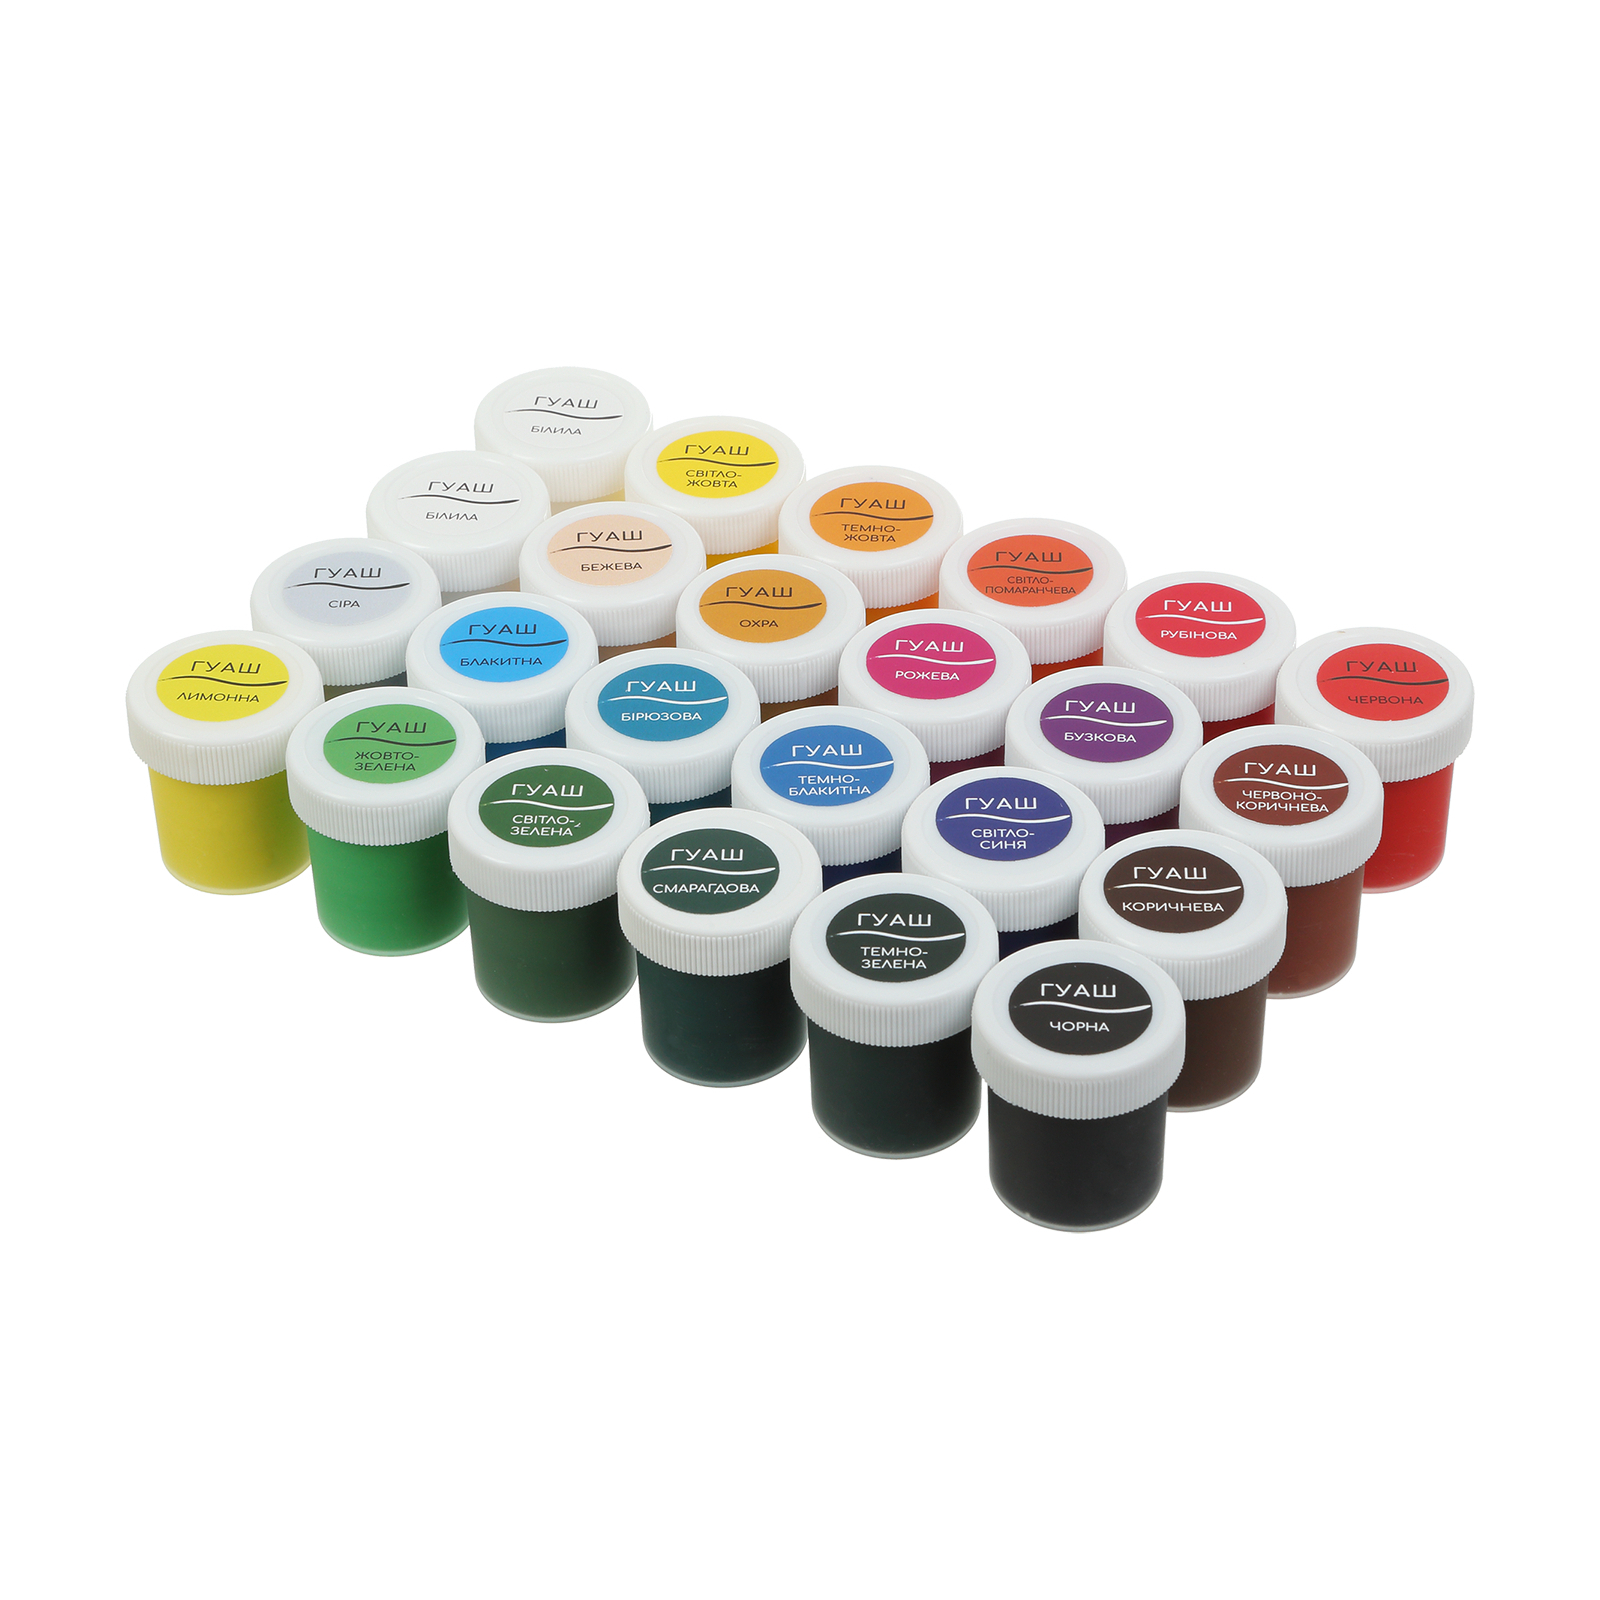 Гуашеві фарби ZiBi KIDS Line -2 гуаш, 24 кольорів х 20 мл (ZB.6614) зображення 2